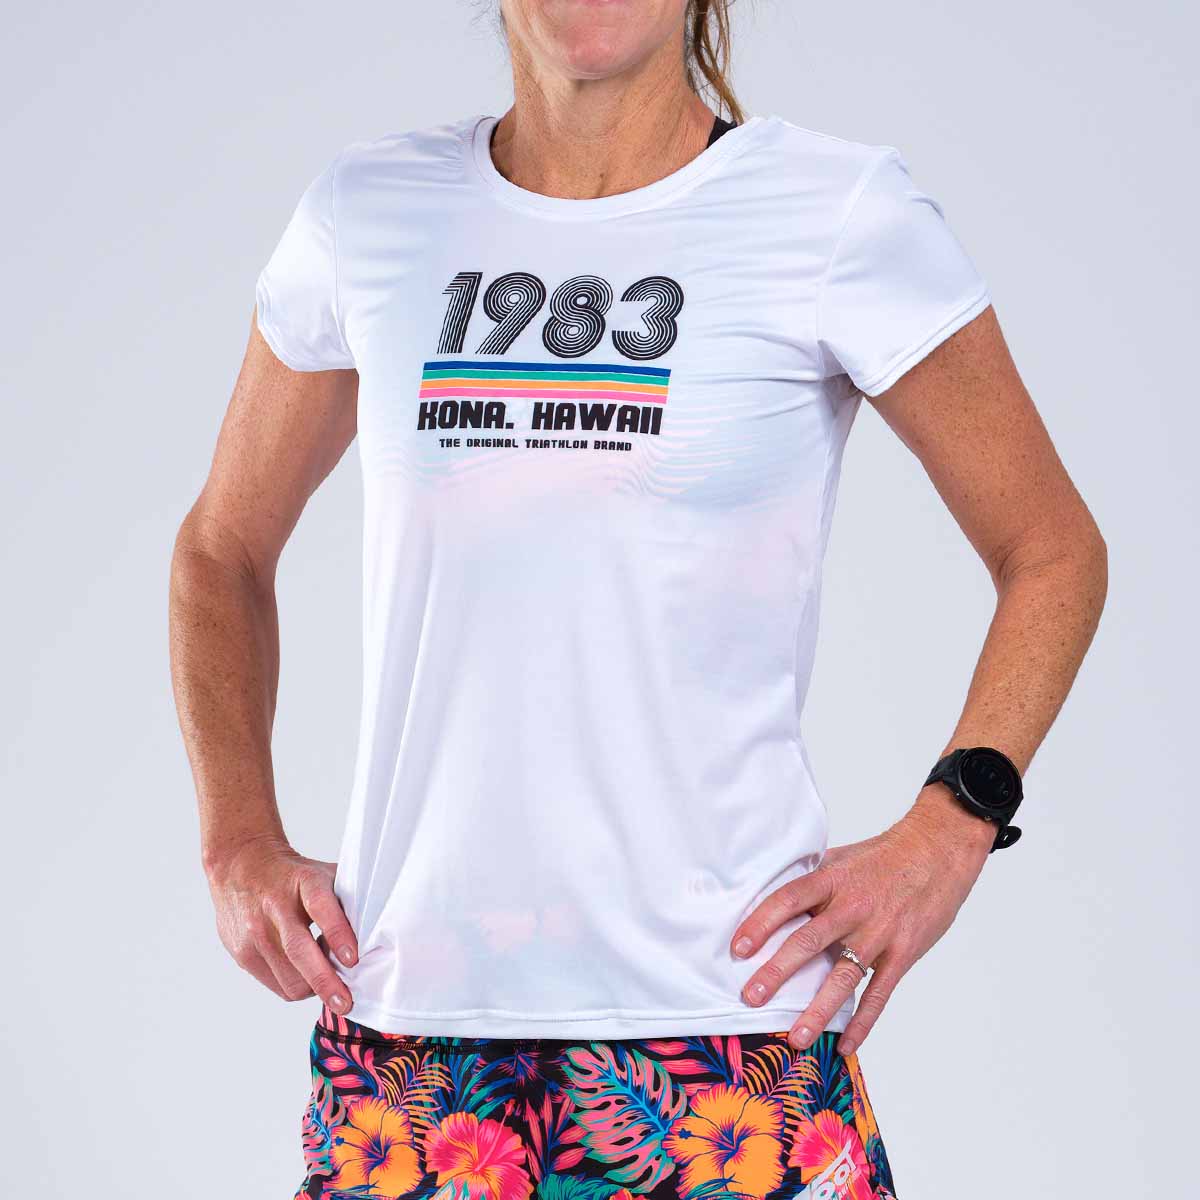 Zoot Sports RUN TEE Women's LTD Run Tee - 40 Years